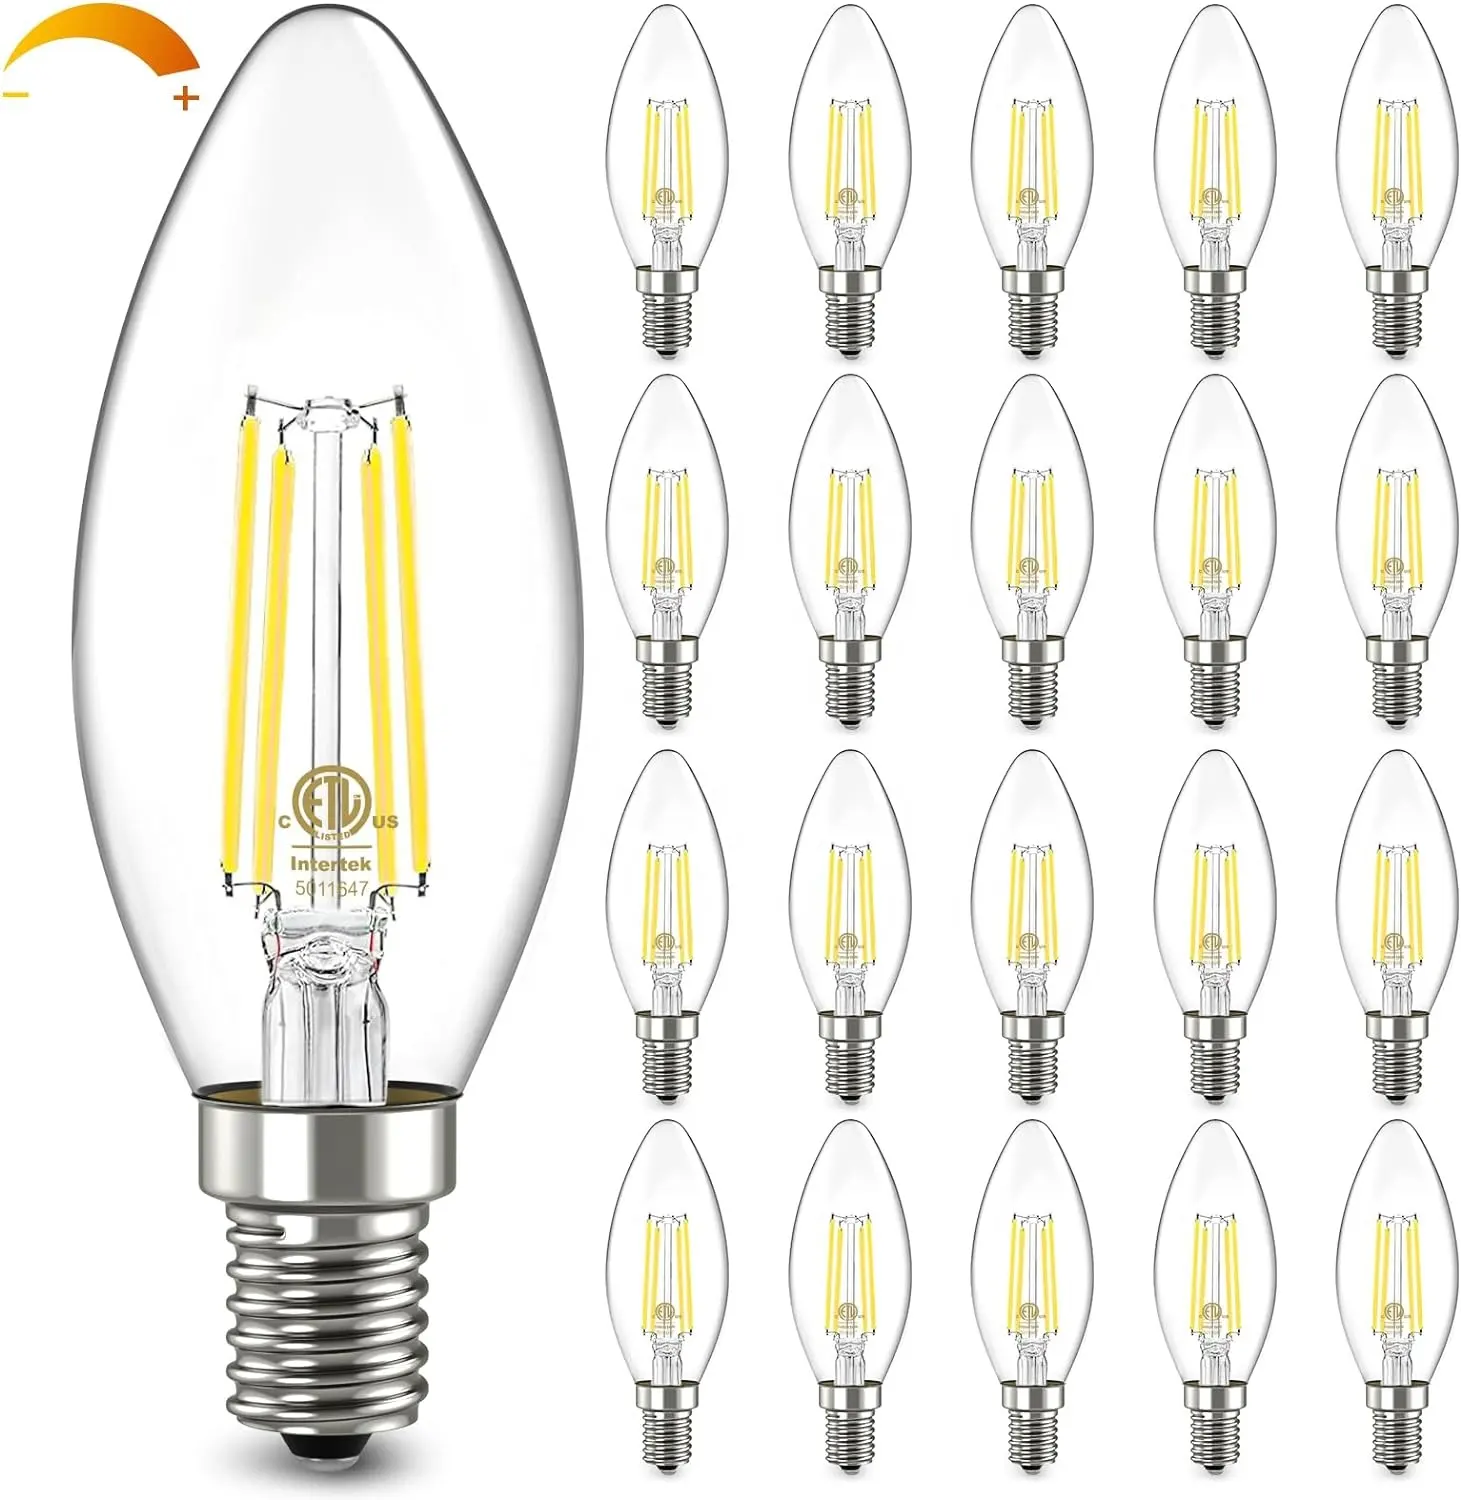 JESLED B11 E12 LED Candelabra Bulbs 60W Equivalent Dimmable E14 E26 E27 B22 LED Candle Light Bulbs 2700K 2W 4W 6W Edison Bulbs